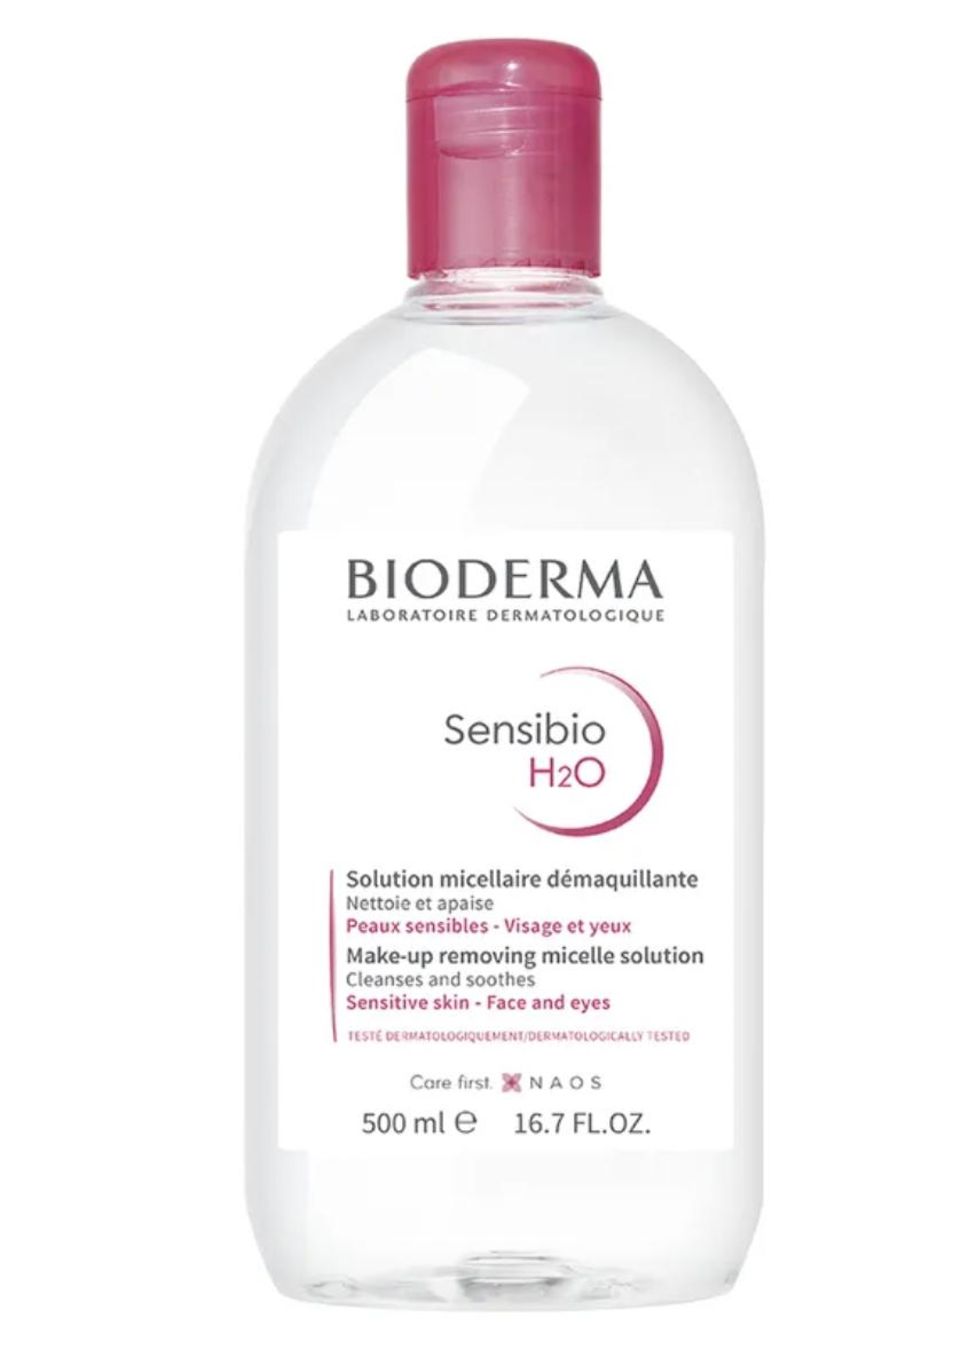 Bioderma Sensibio H2O Mizellenwasser, rund 13 Euro